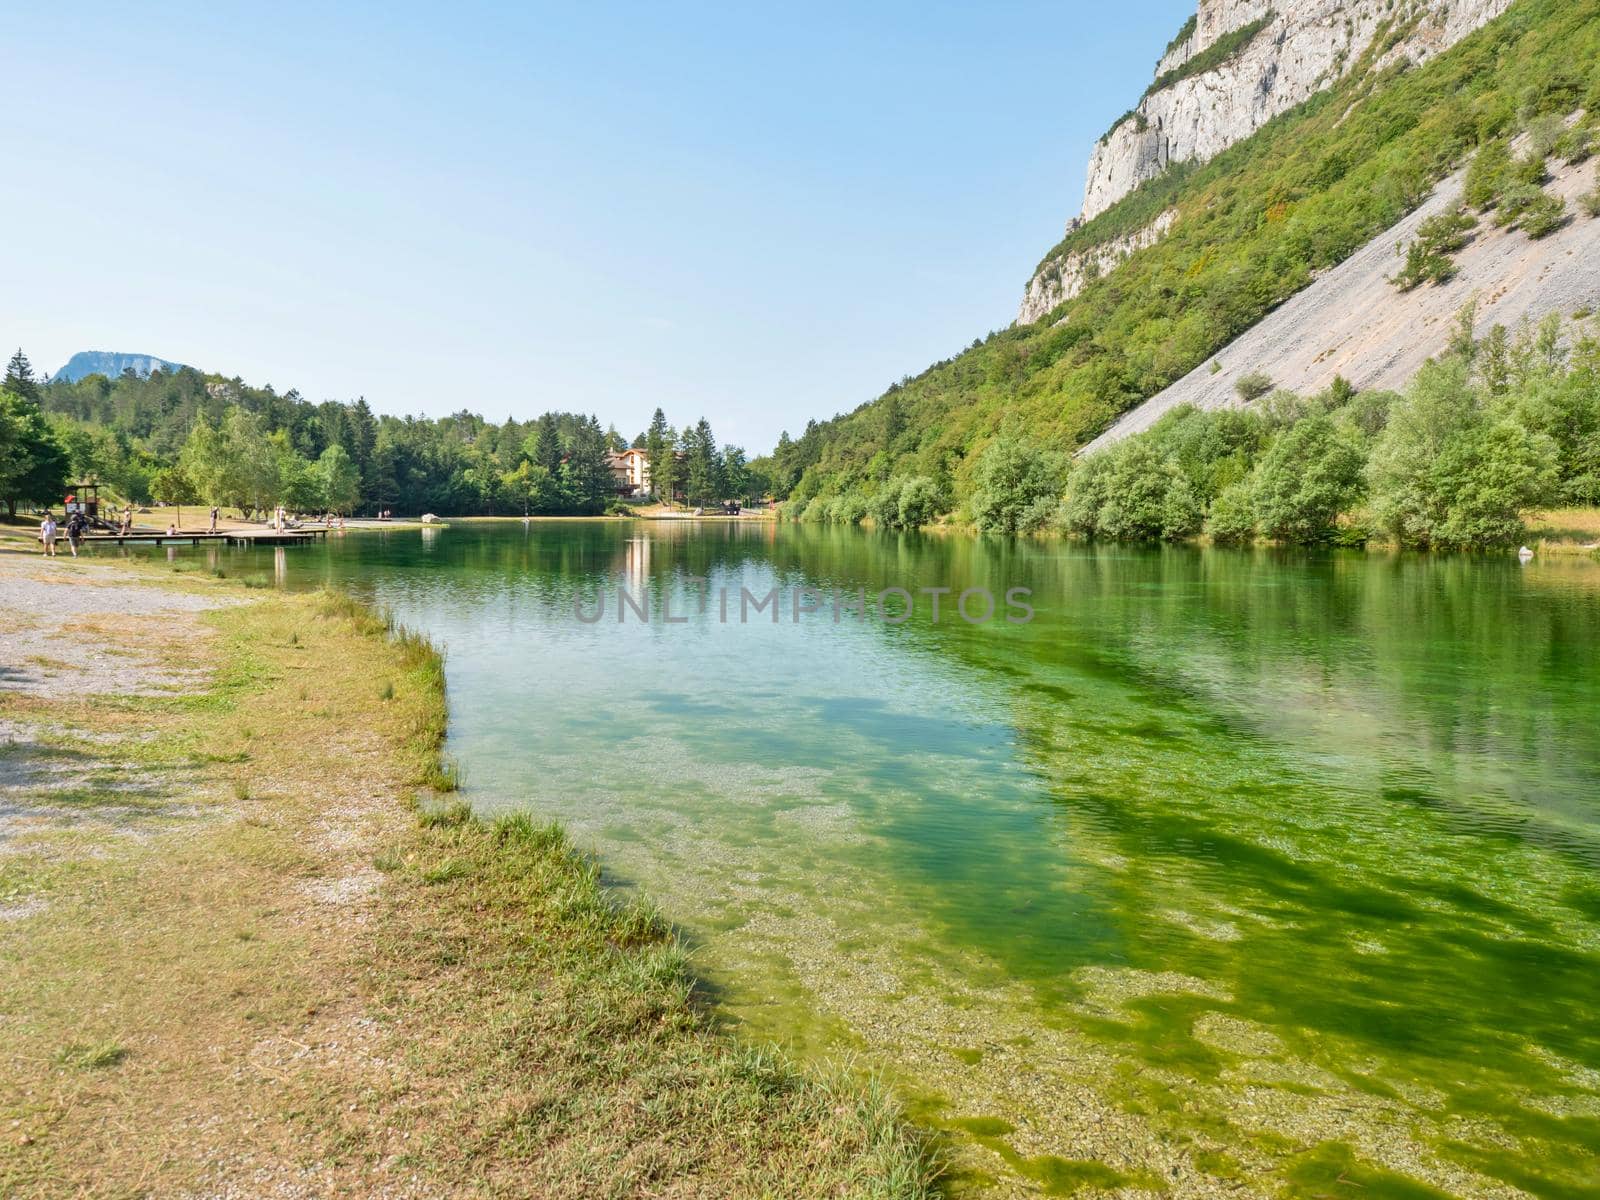 Lago di Nembia Lake of Nembia, popular tourist destination in Italy by rdonar2